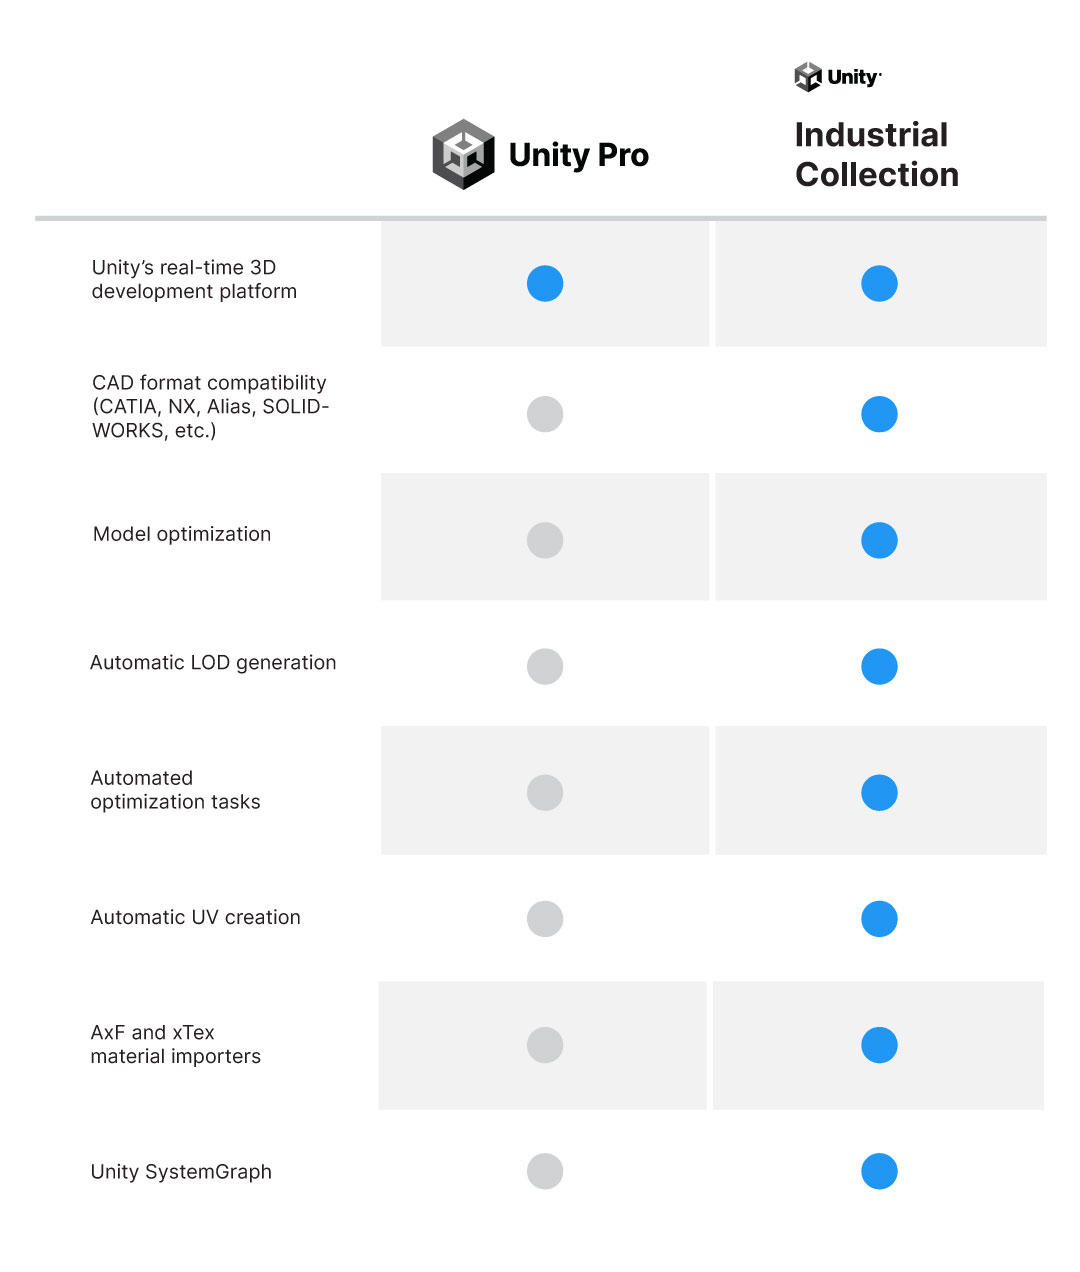 Cuadro comparativo de Unity Pro y UIC